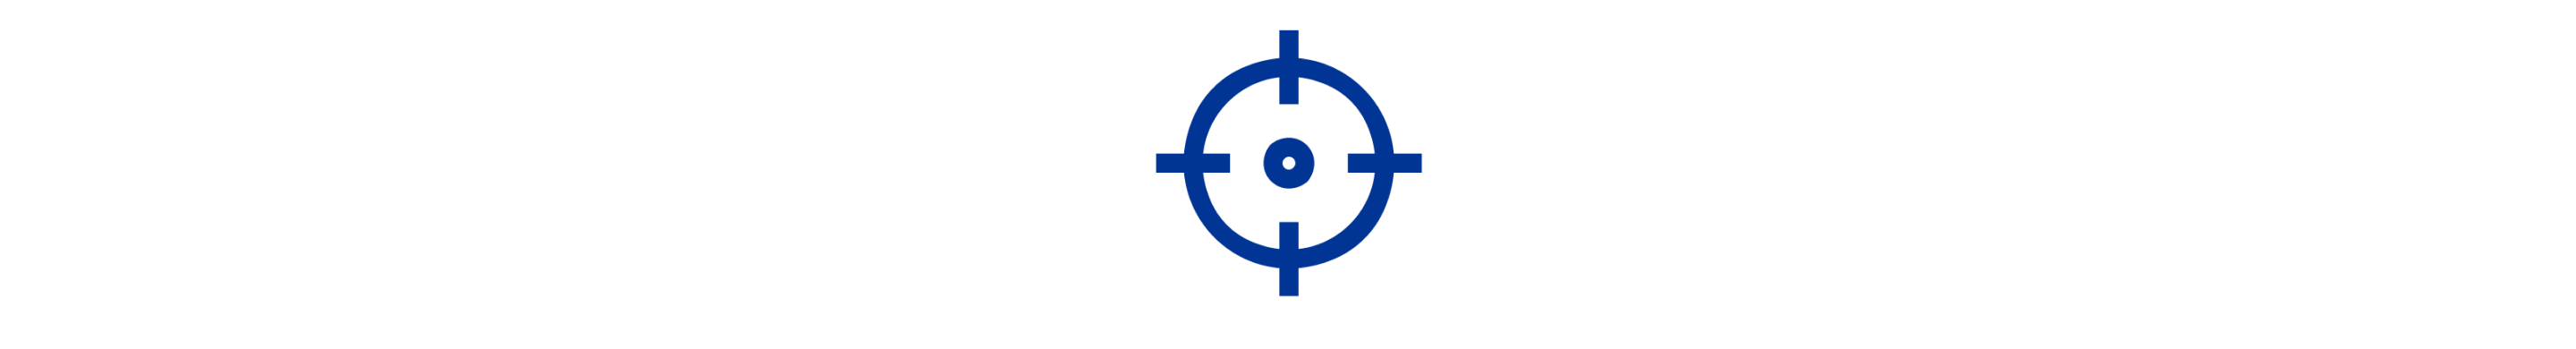 Icône bleue d'une cible en forme de cible